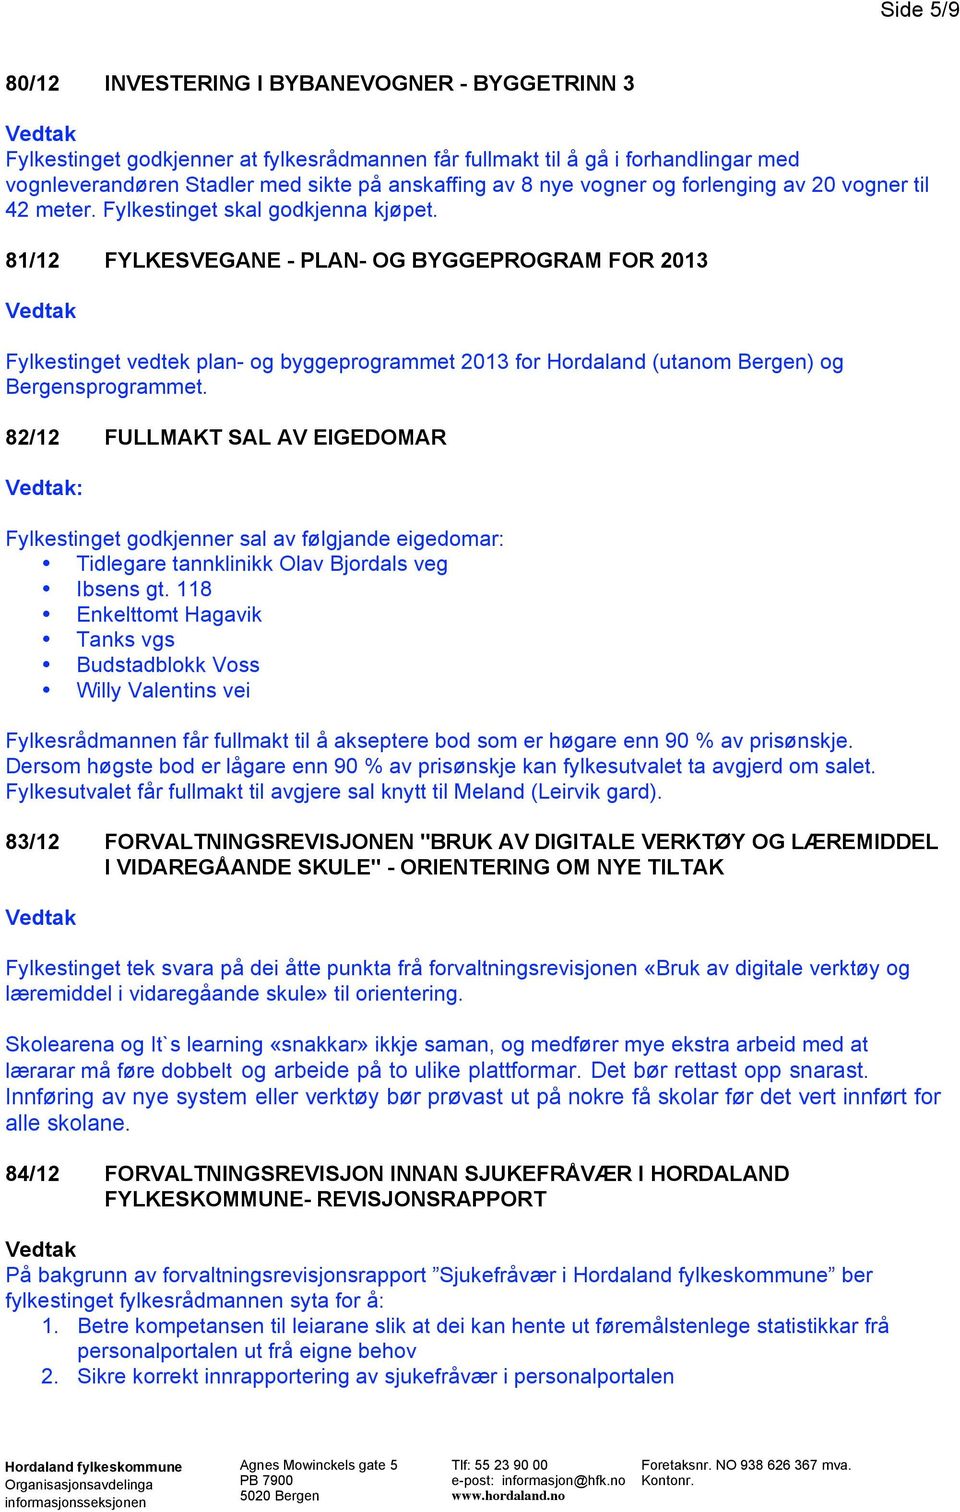 81/12 FYLKESVEGANE - PLAN- OG BYGGEPROGRAM FOR 2013 Fylkestinget vedtek plan- og byggeprogrammet 2013 for Hordaland (utanom Bergen) og Bergensprogrammet.